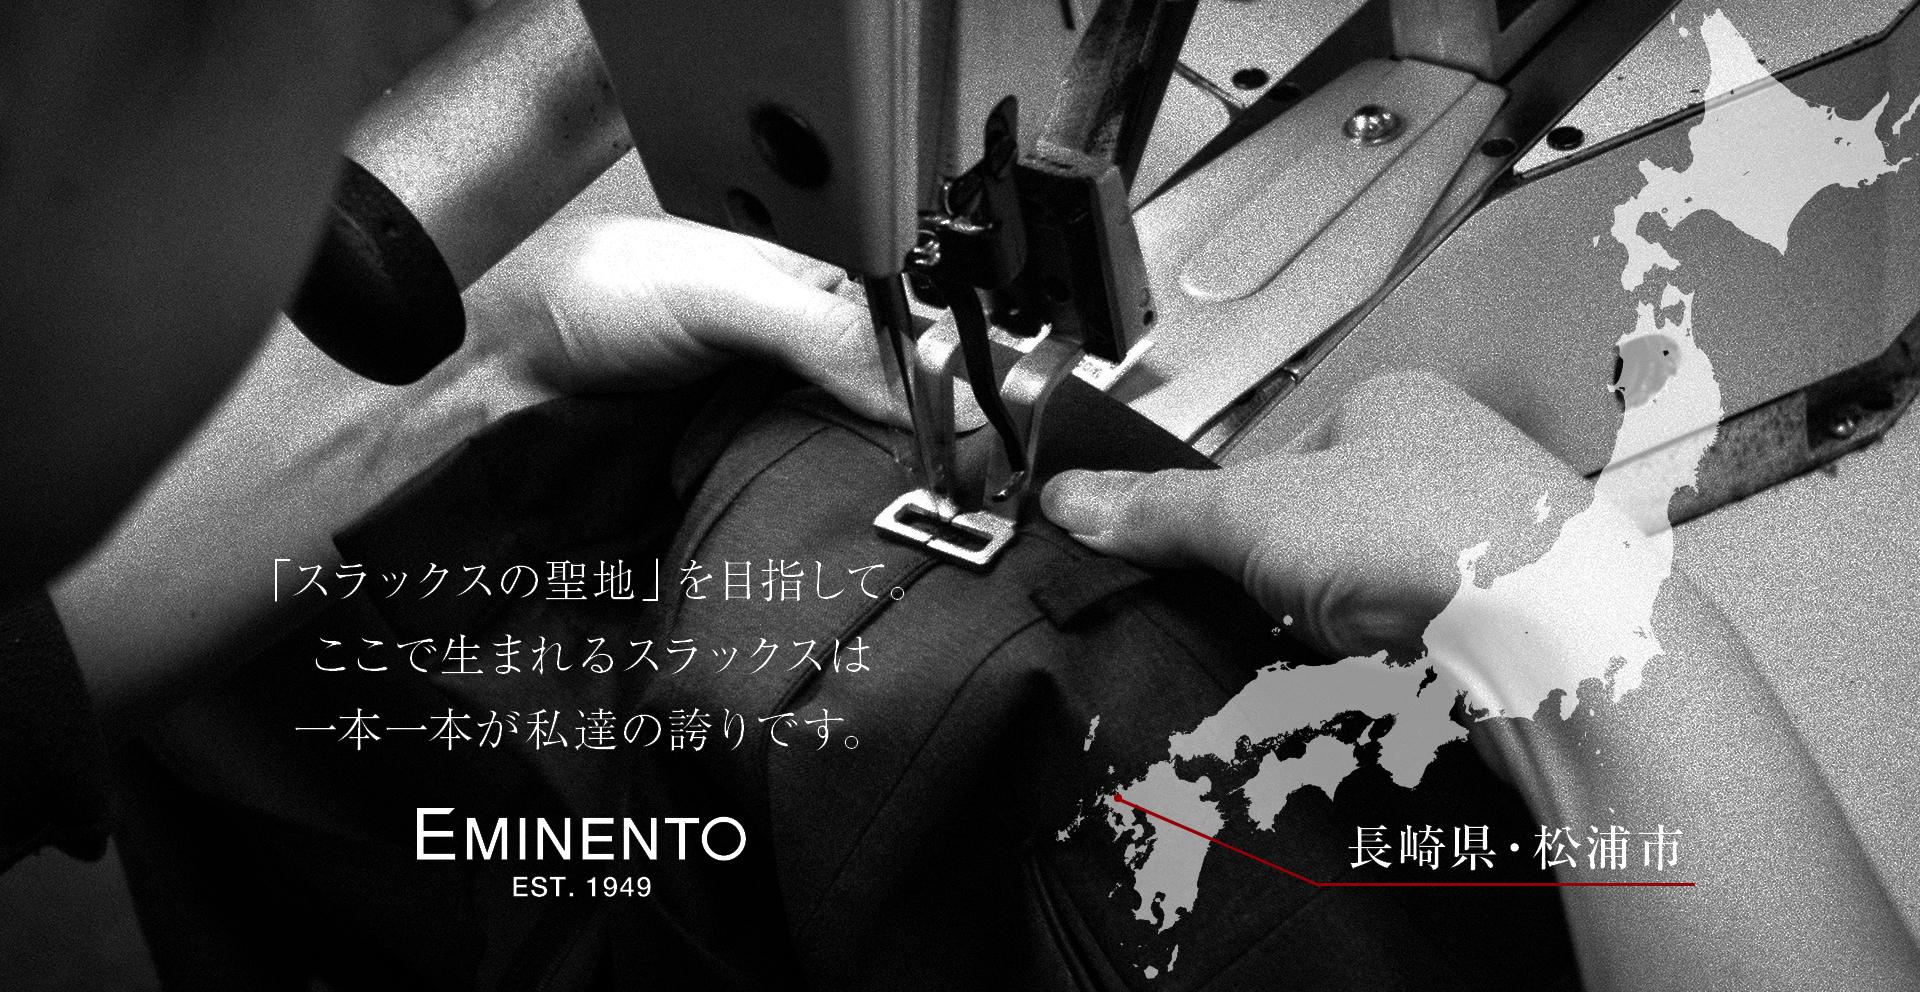 メンズスラックスのエミネント|日本の匠を、松浦から世界へ